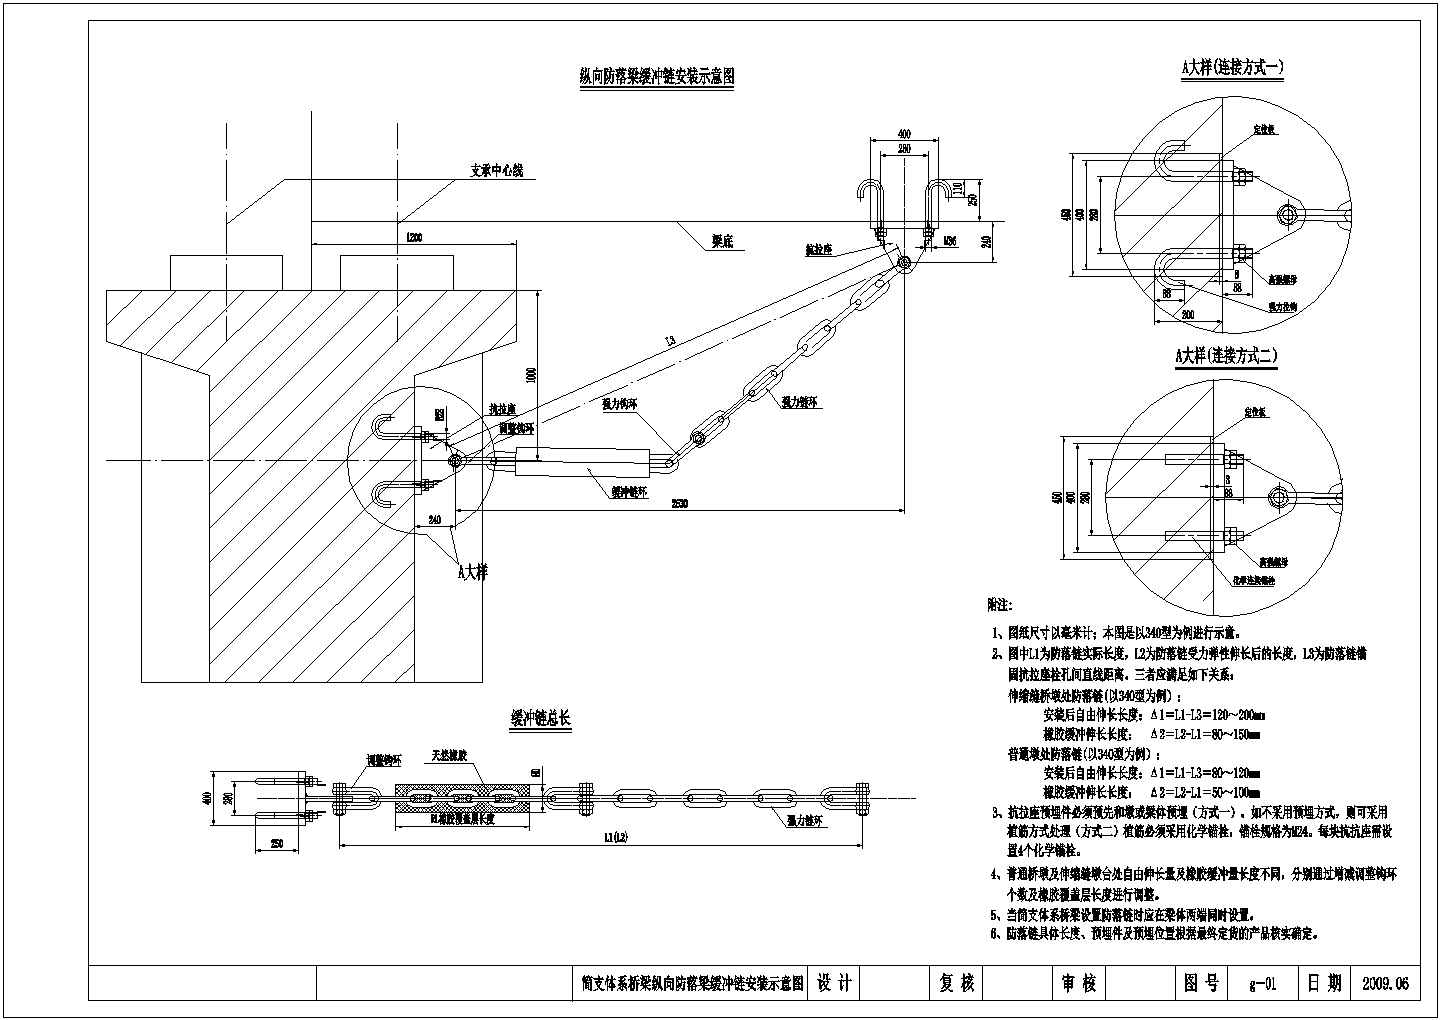 【雅安】高速公路土建路基工程桥梁抗震措施优化设计图